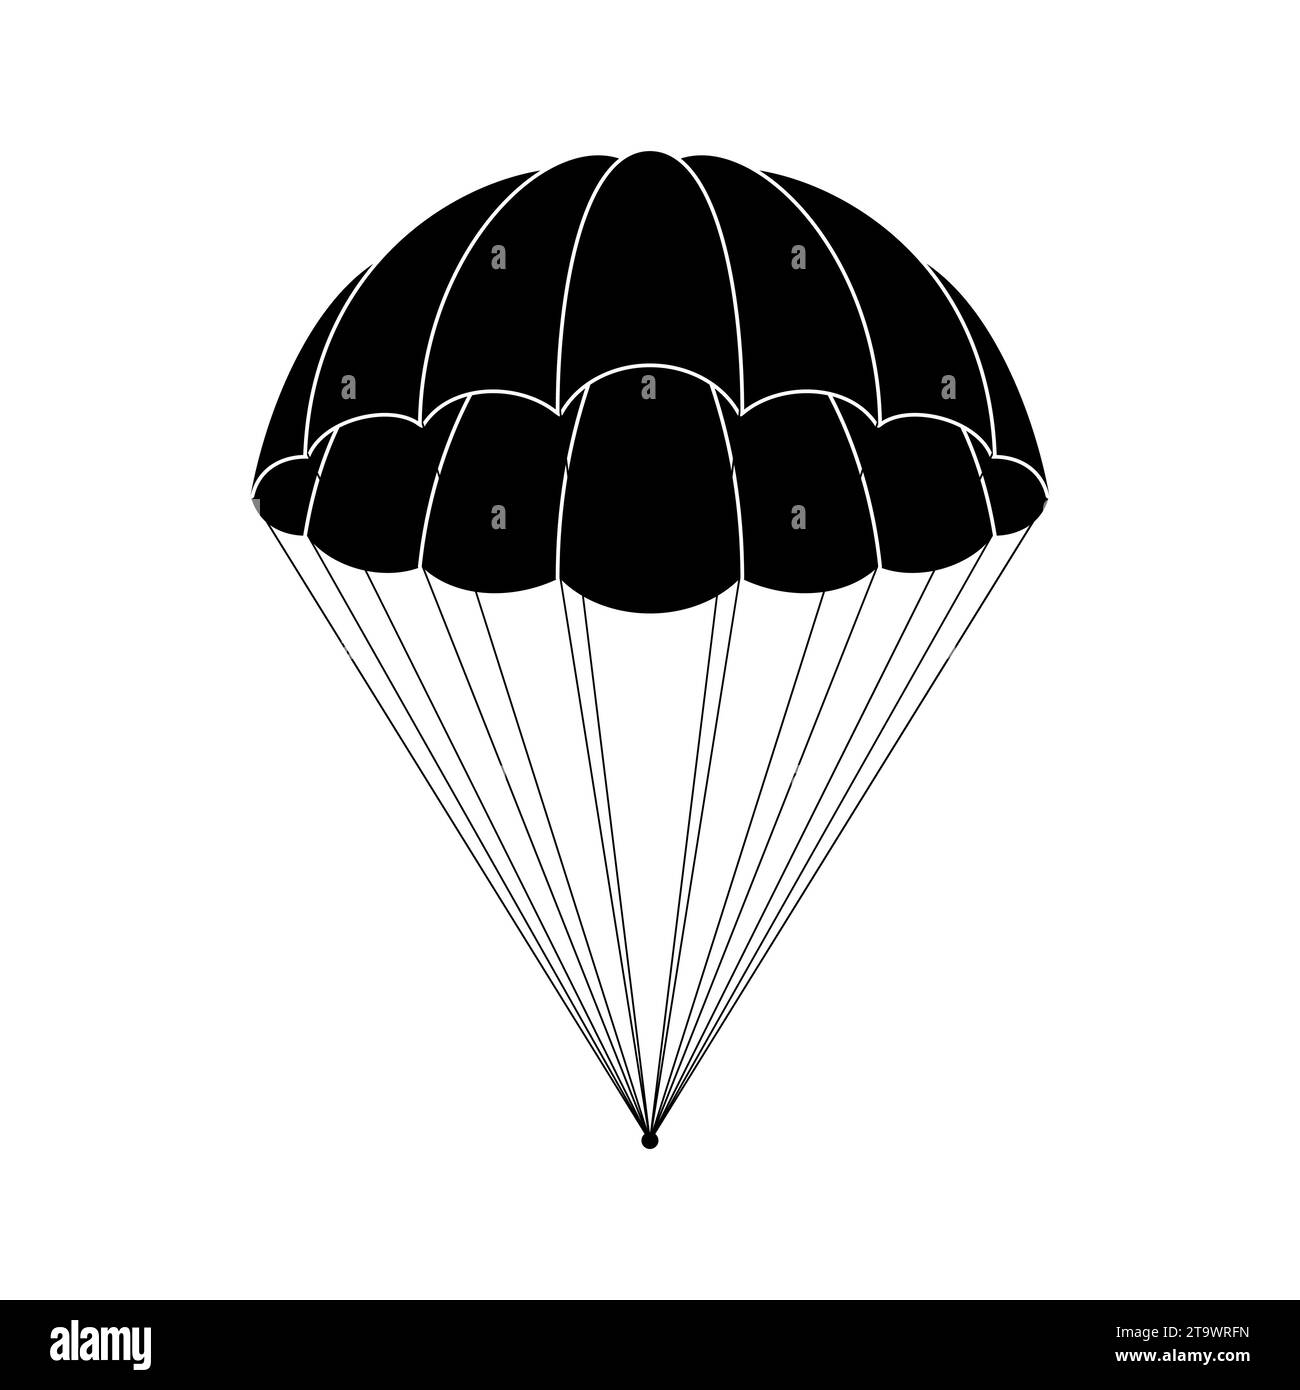 Icona del paracadute isolata su sfondo bianco. Discesa libera e volo nello spazio consegna regali e merci con un aiuto a sorpresa. Illustrazione Vettoriale